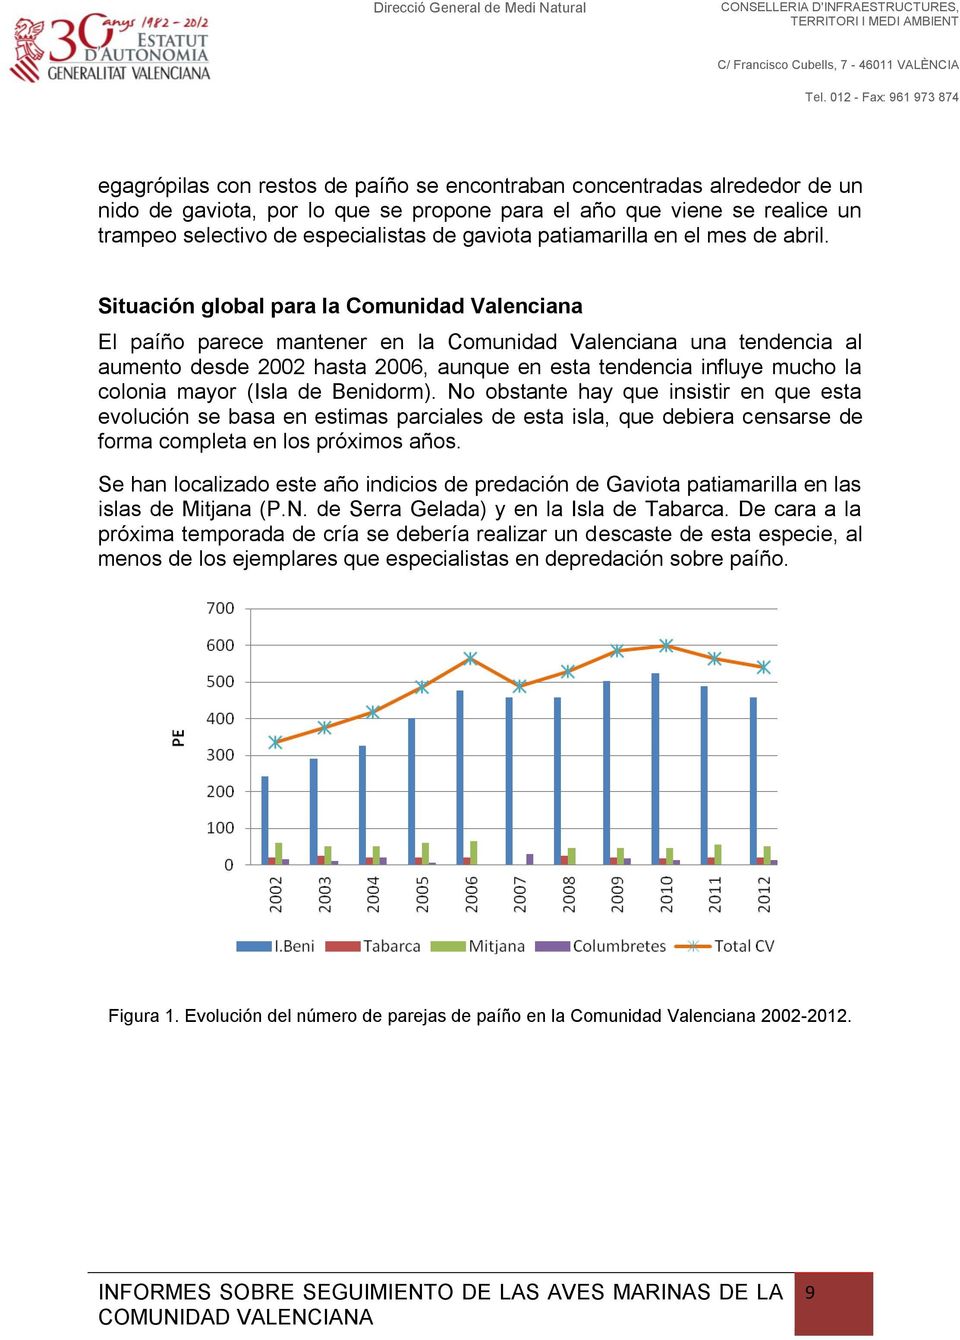 Situación global para la Comunidad Valenciana El paíño parece mantener en la Comunidad Valenciana una tendencia al aumento desde 2002 hasta 2006, aunque en esta tendencia influye mucho la colonia